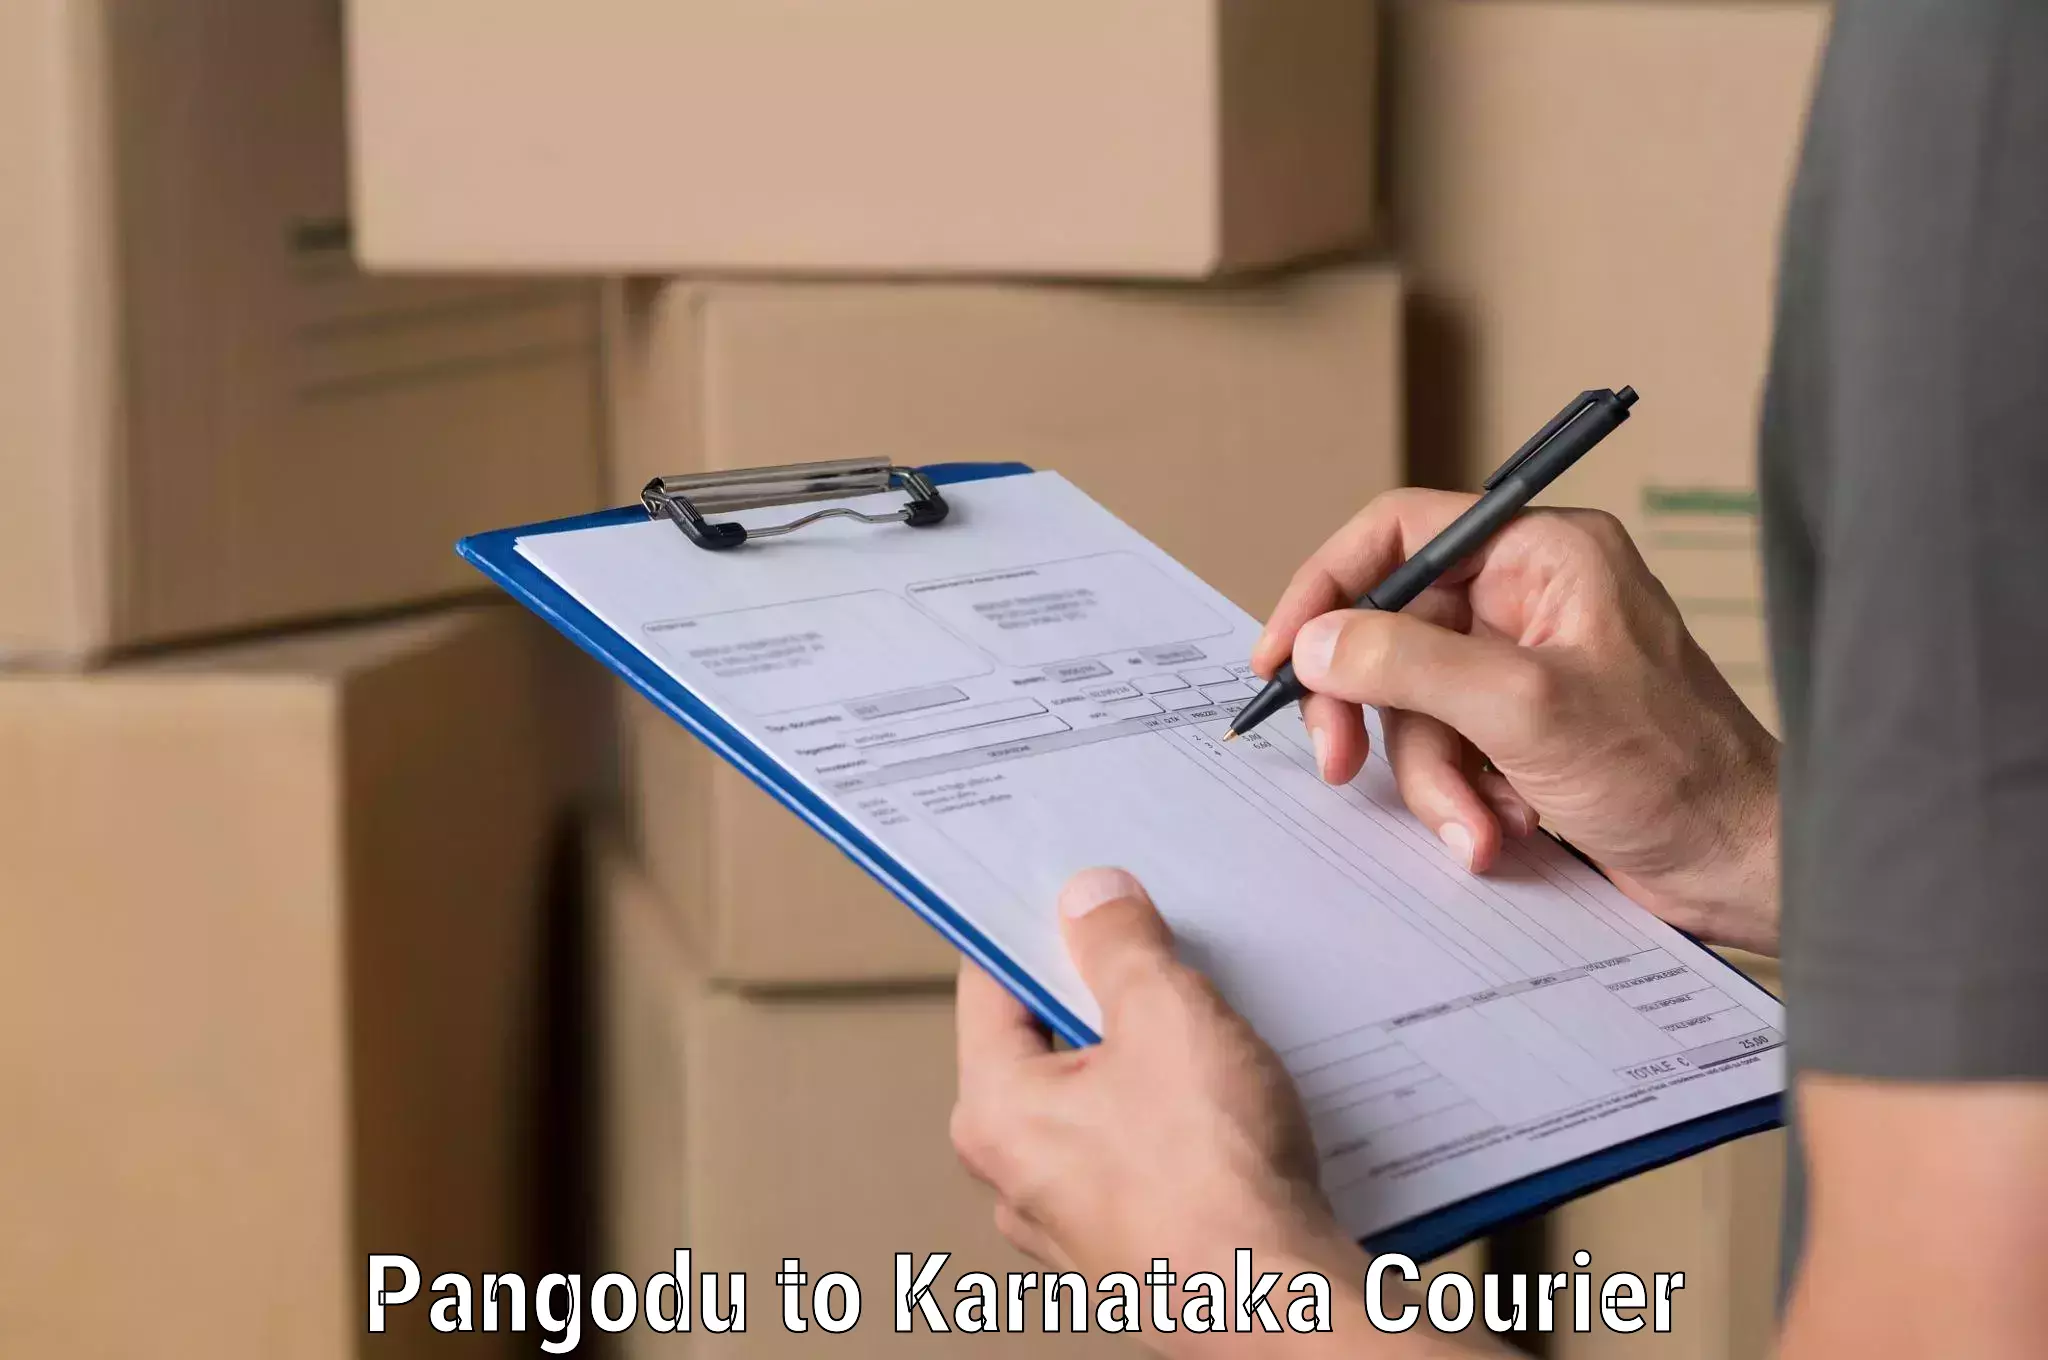 Efficient parcel service Pangodu to Mangalore Port